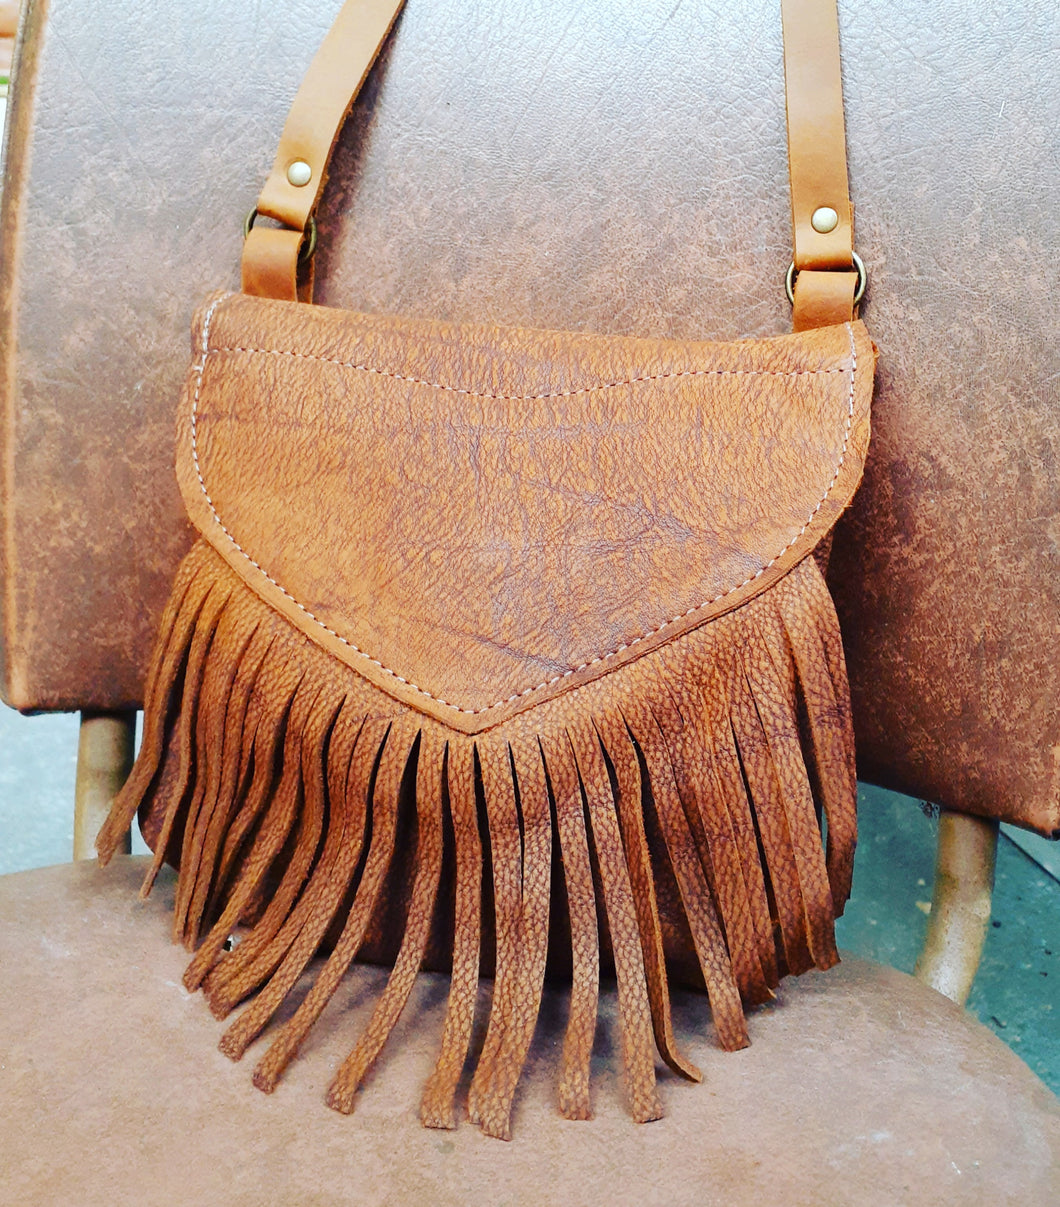 Suede Fringe Bag DIY | Suede fringe bag, Leather fringe purse, Fringe bags